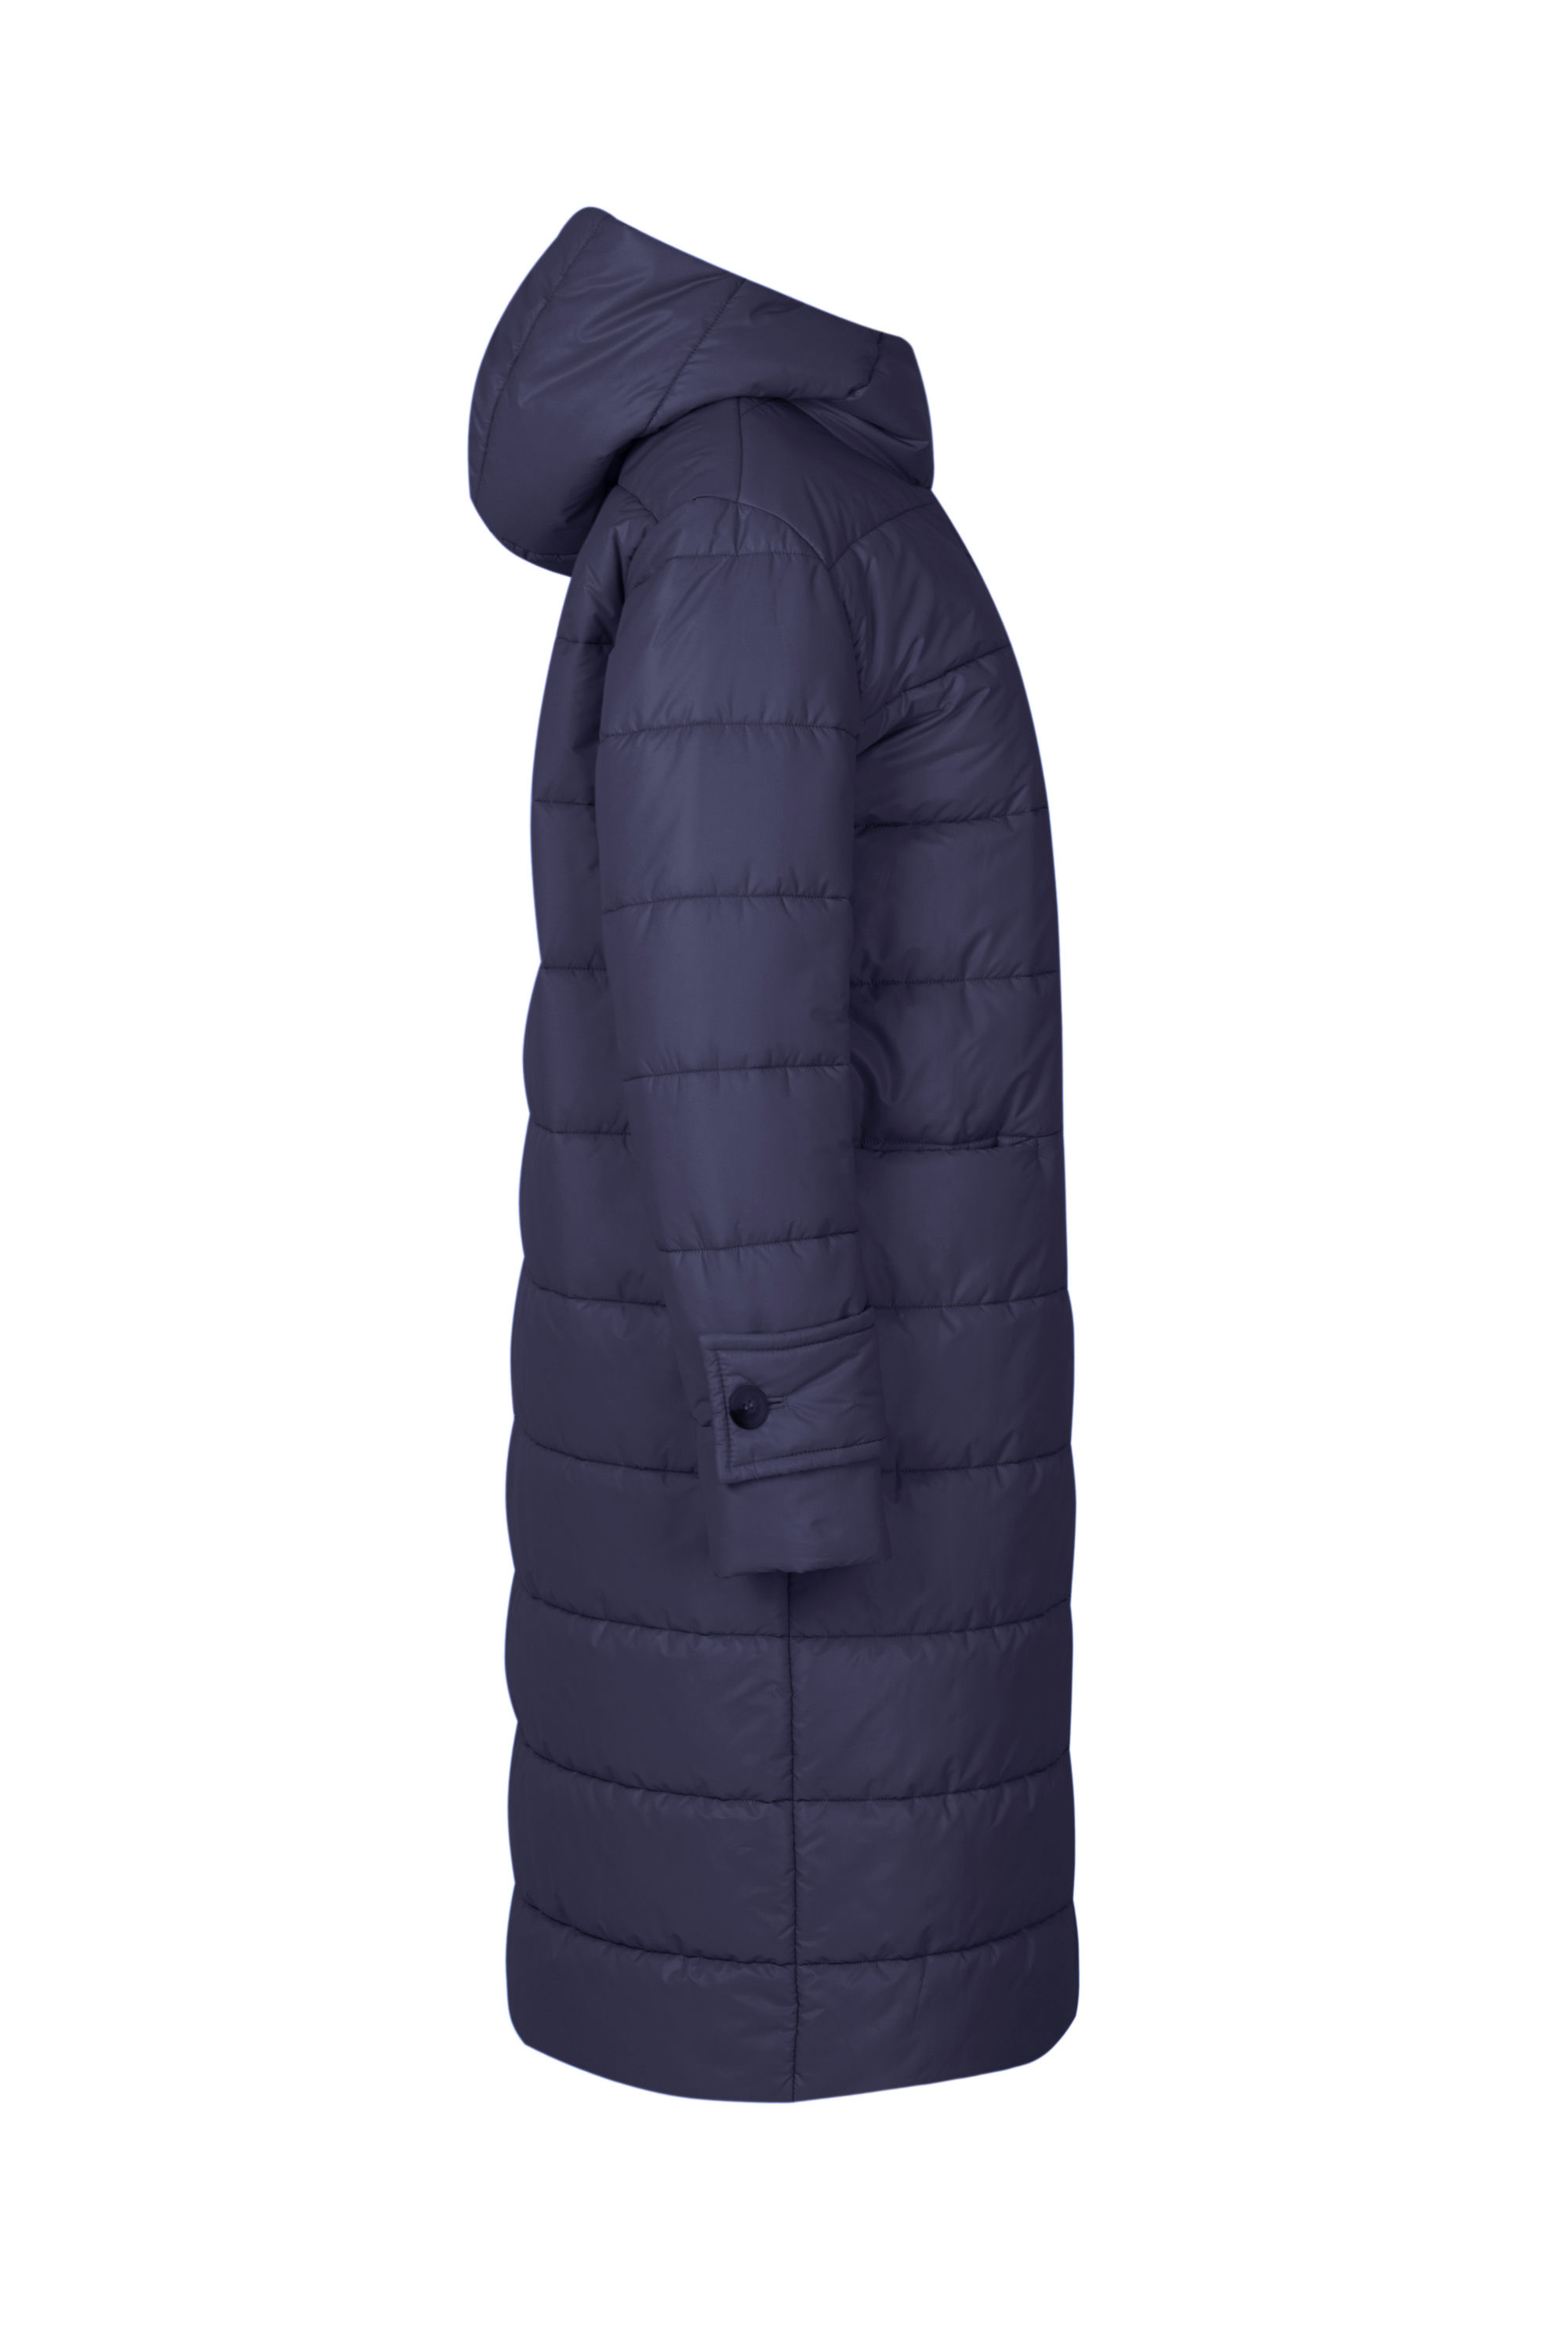 Пальто женское плащевое утепленное 5-13059-1